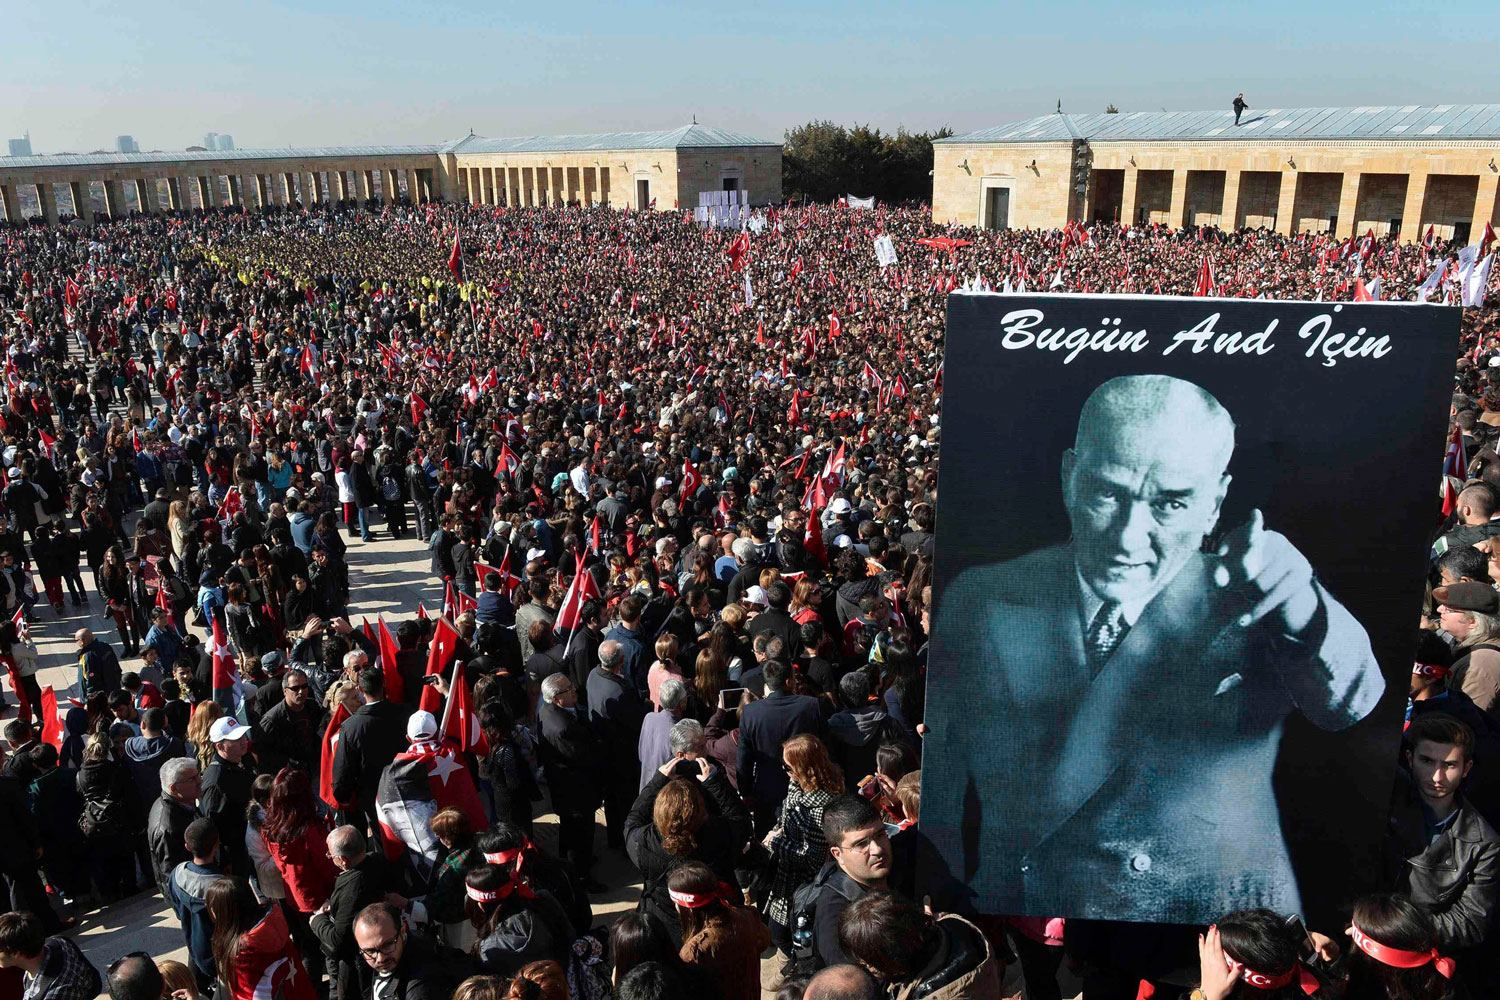 Los turcos festejan más que nunca el aniversario del fundador de su estado laico moderno Atatürk